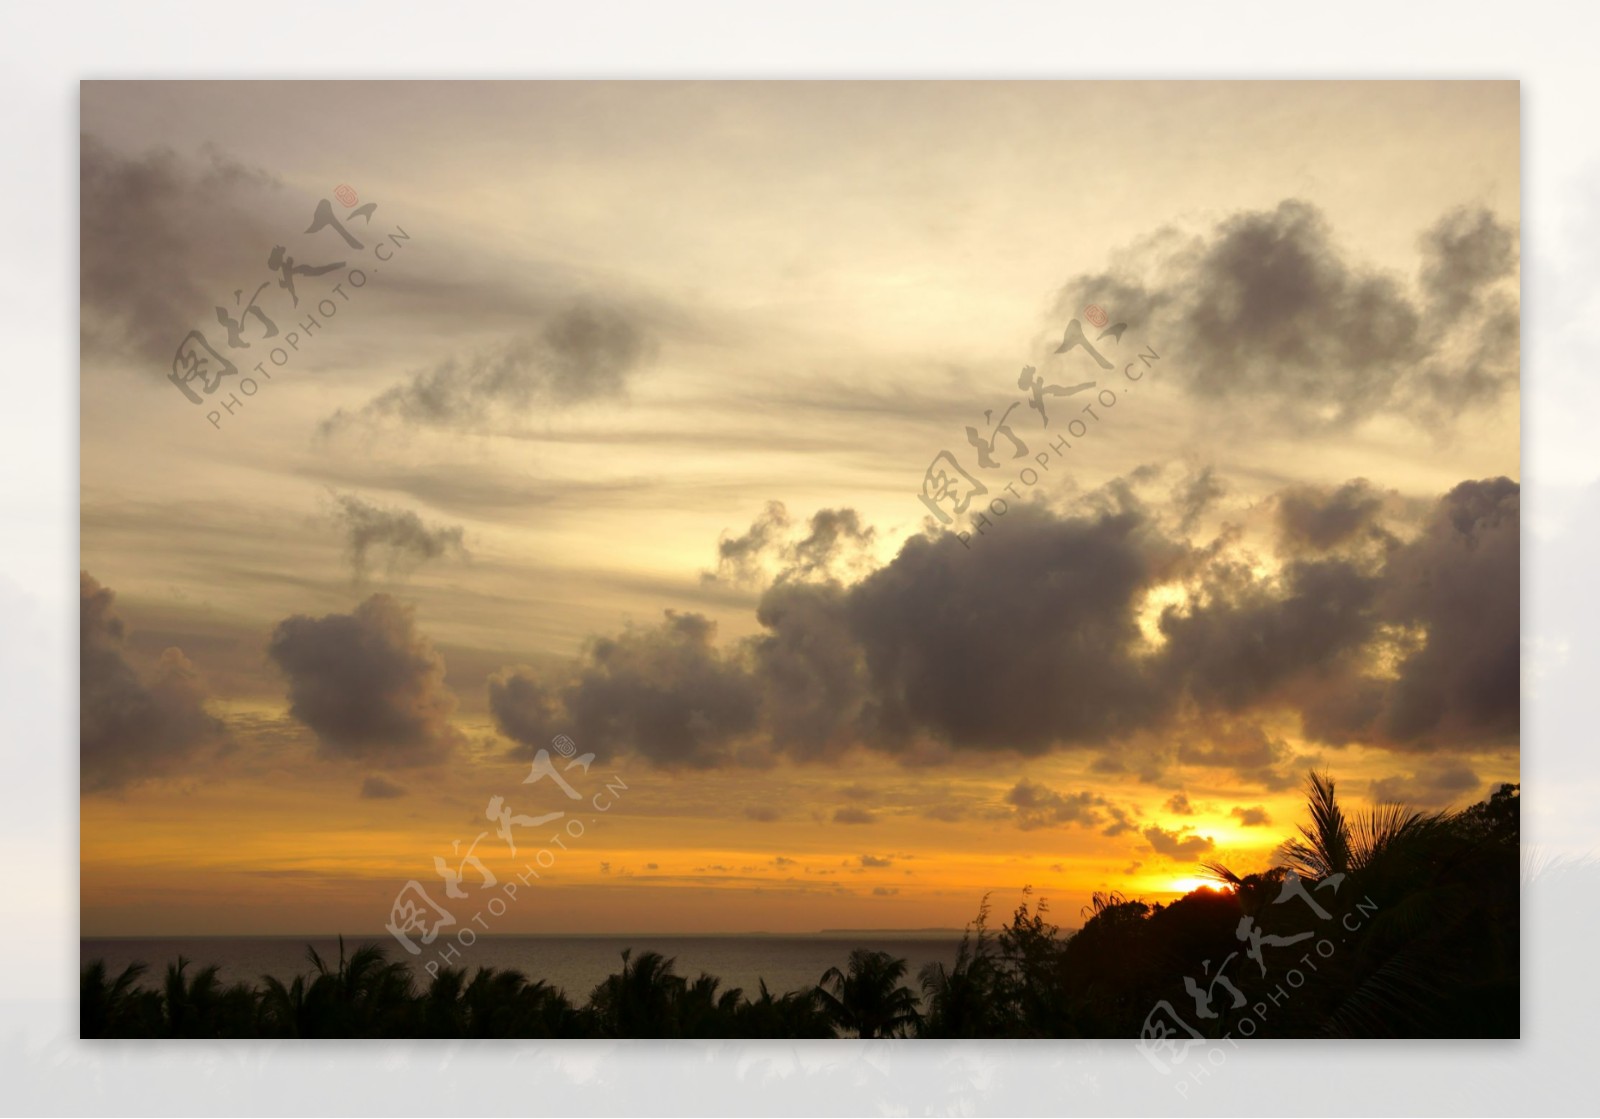 巴厘岛的日出图片